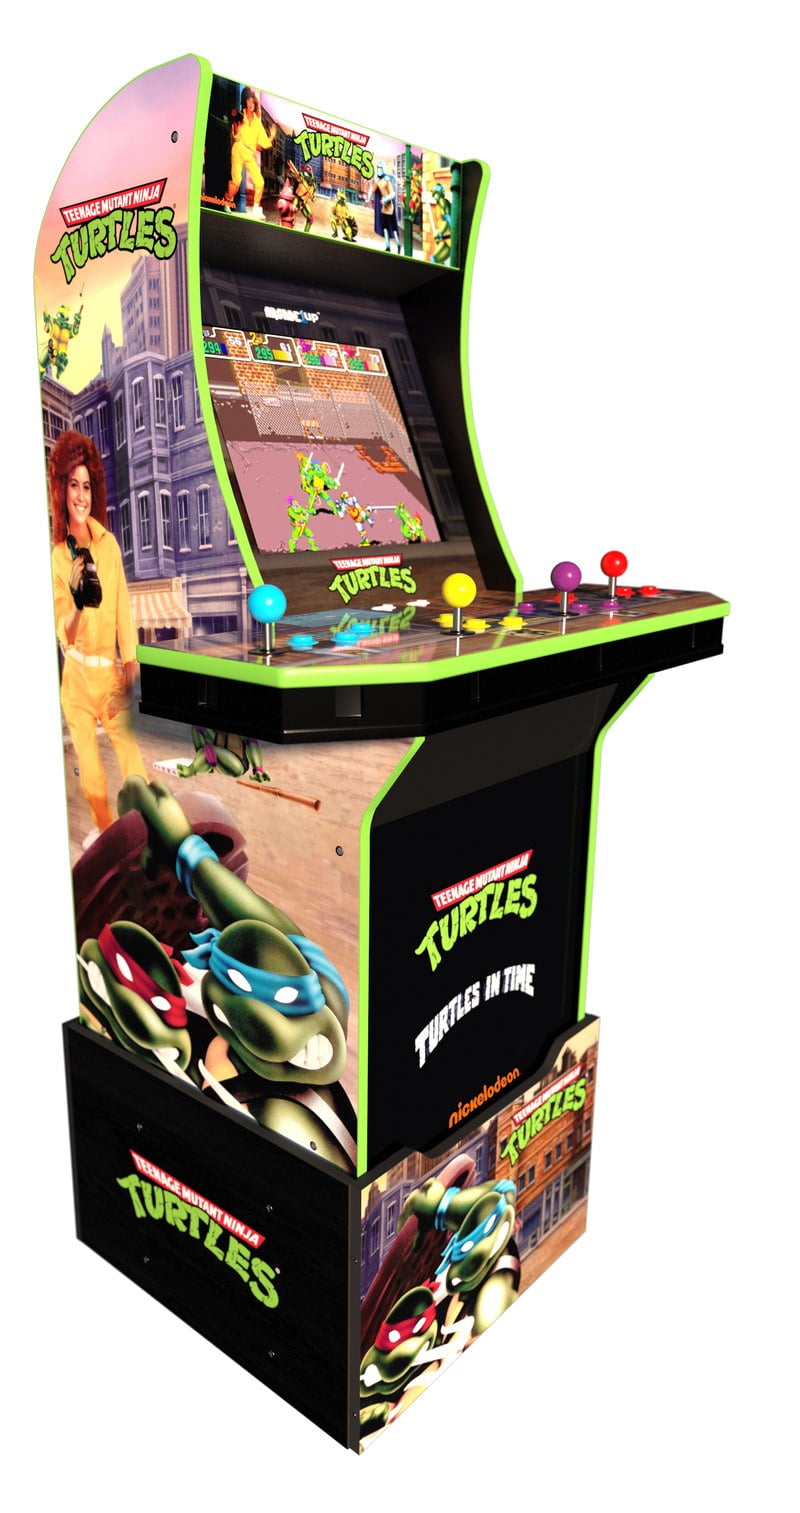 TMNT Teenage Mutant Ninja Turtles Decal Set Arcade1up Cabinet Riser Graphics 